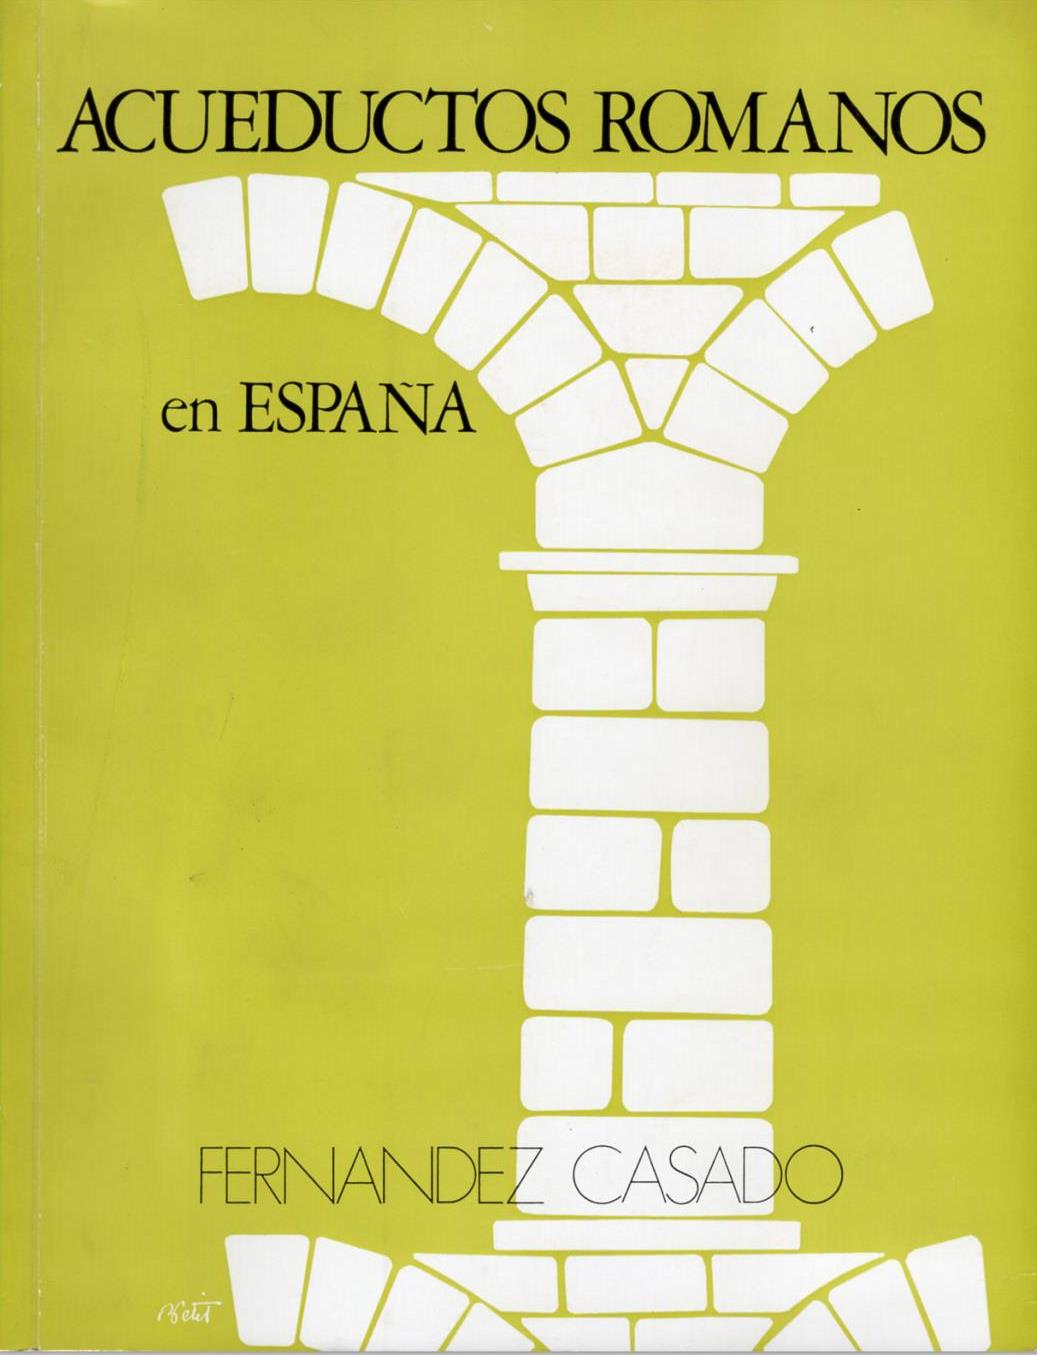 Imagen de portada del libro Acueductos romanos en España